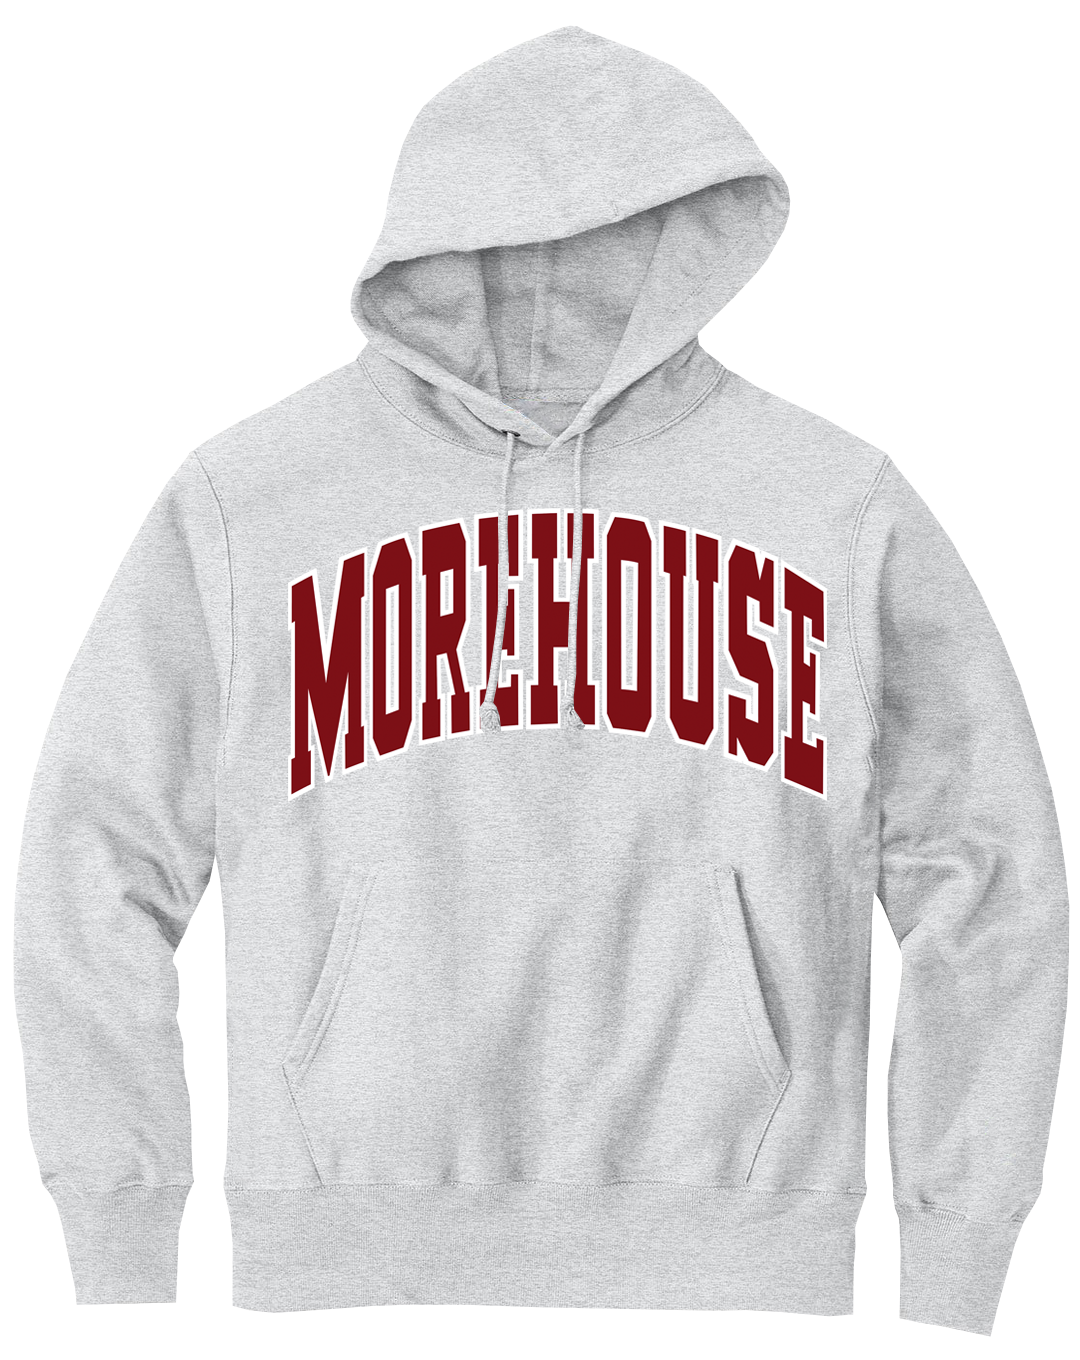 Morehouse 90s Retro Hoodie